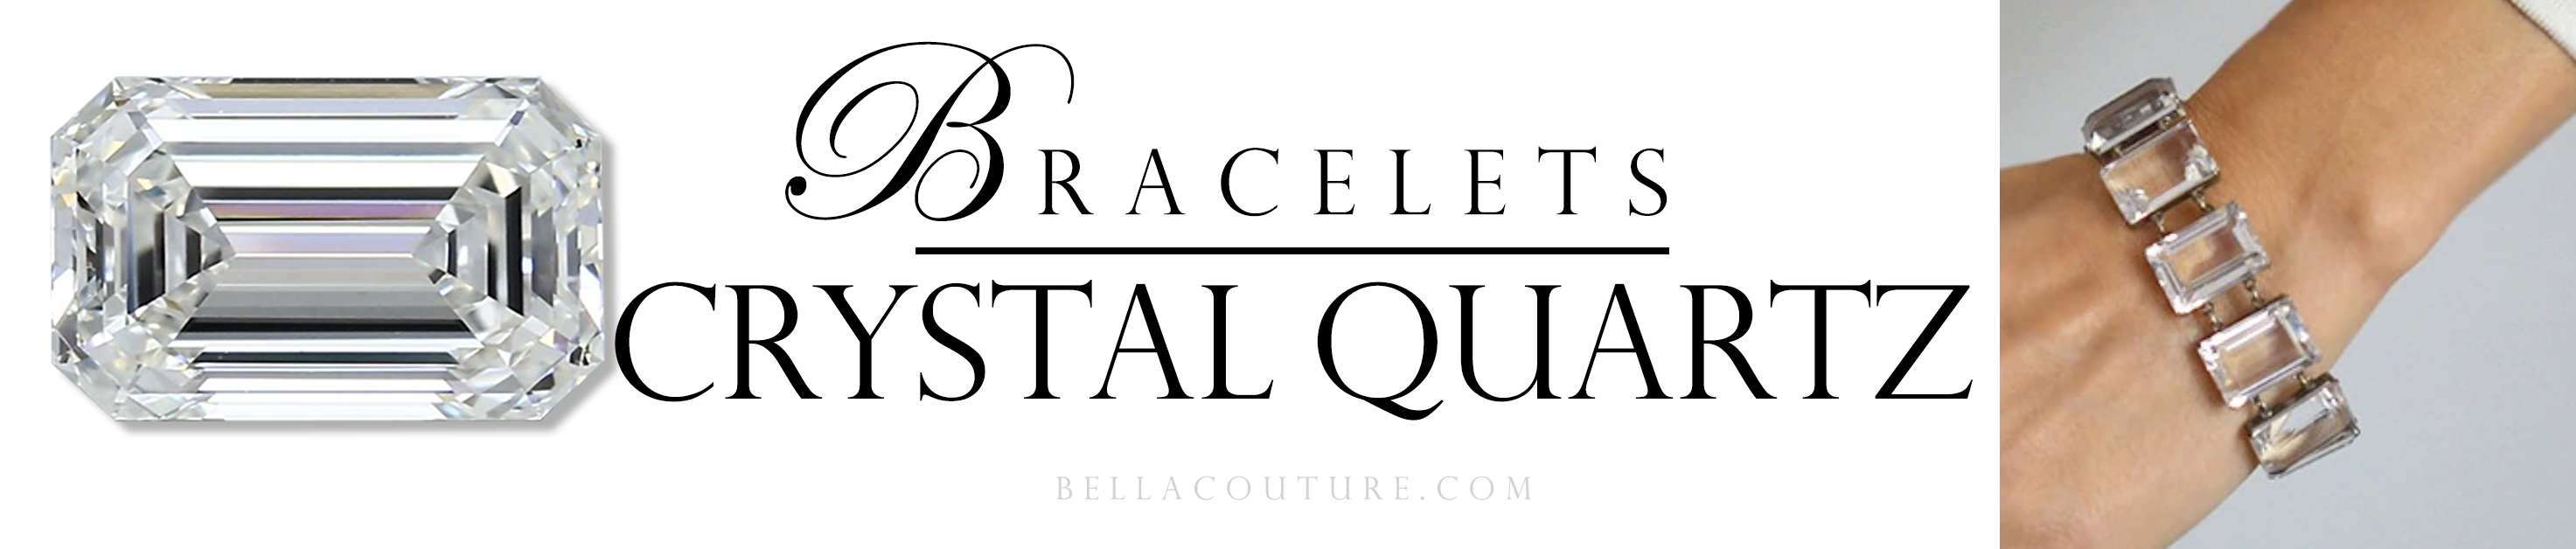 bella-couture-crystal-quartz-bracelets-new-jane-bordeaux-diamond-white-gold-gemstone-jewelry-jane-bordeaux-collection-1-1-copy.png